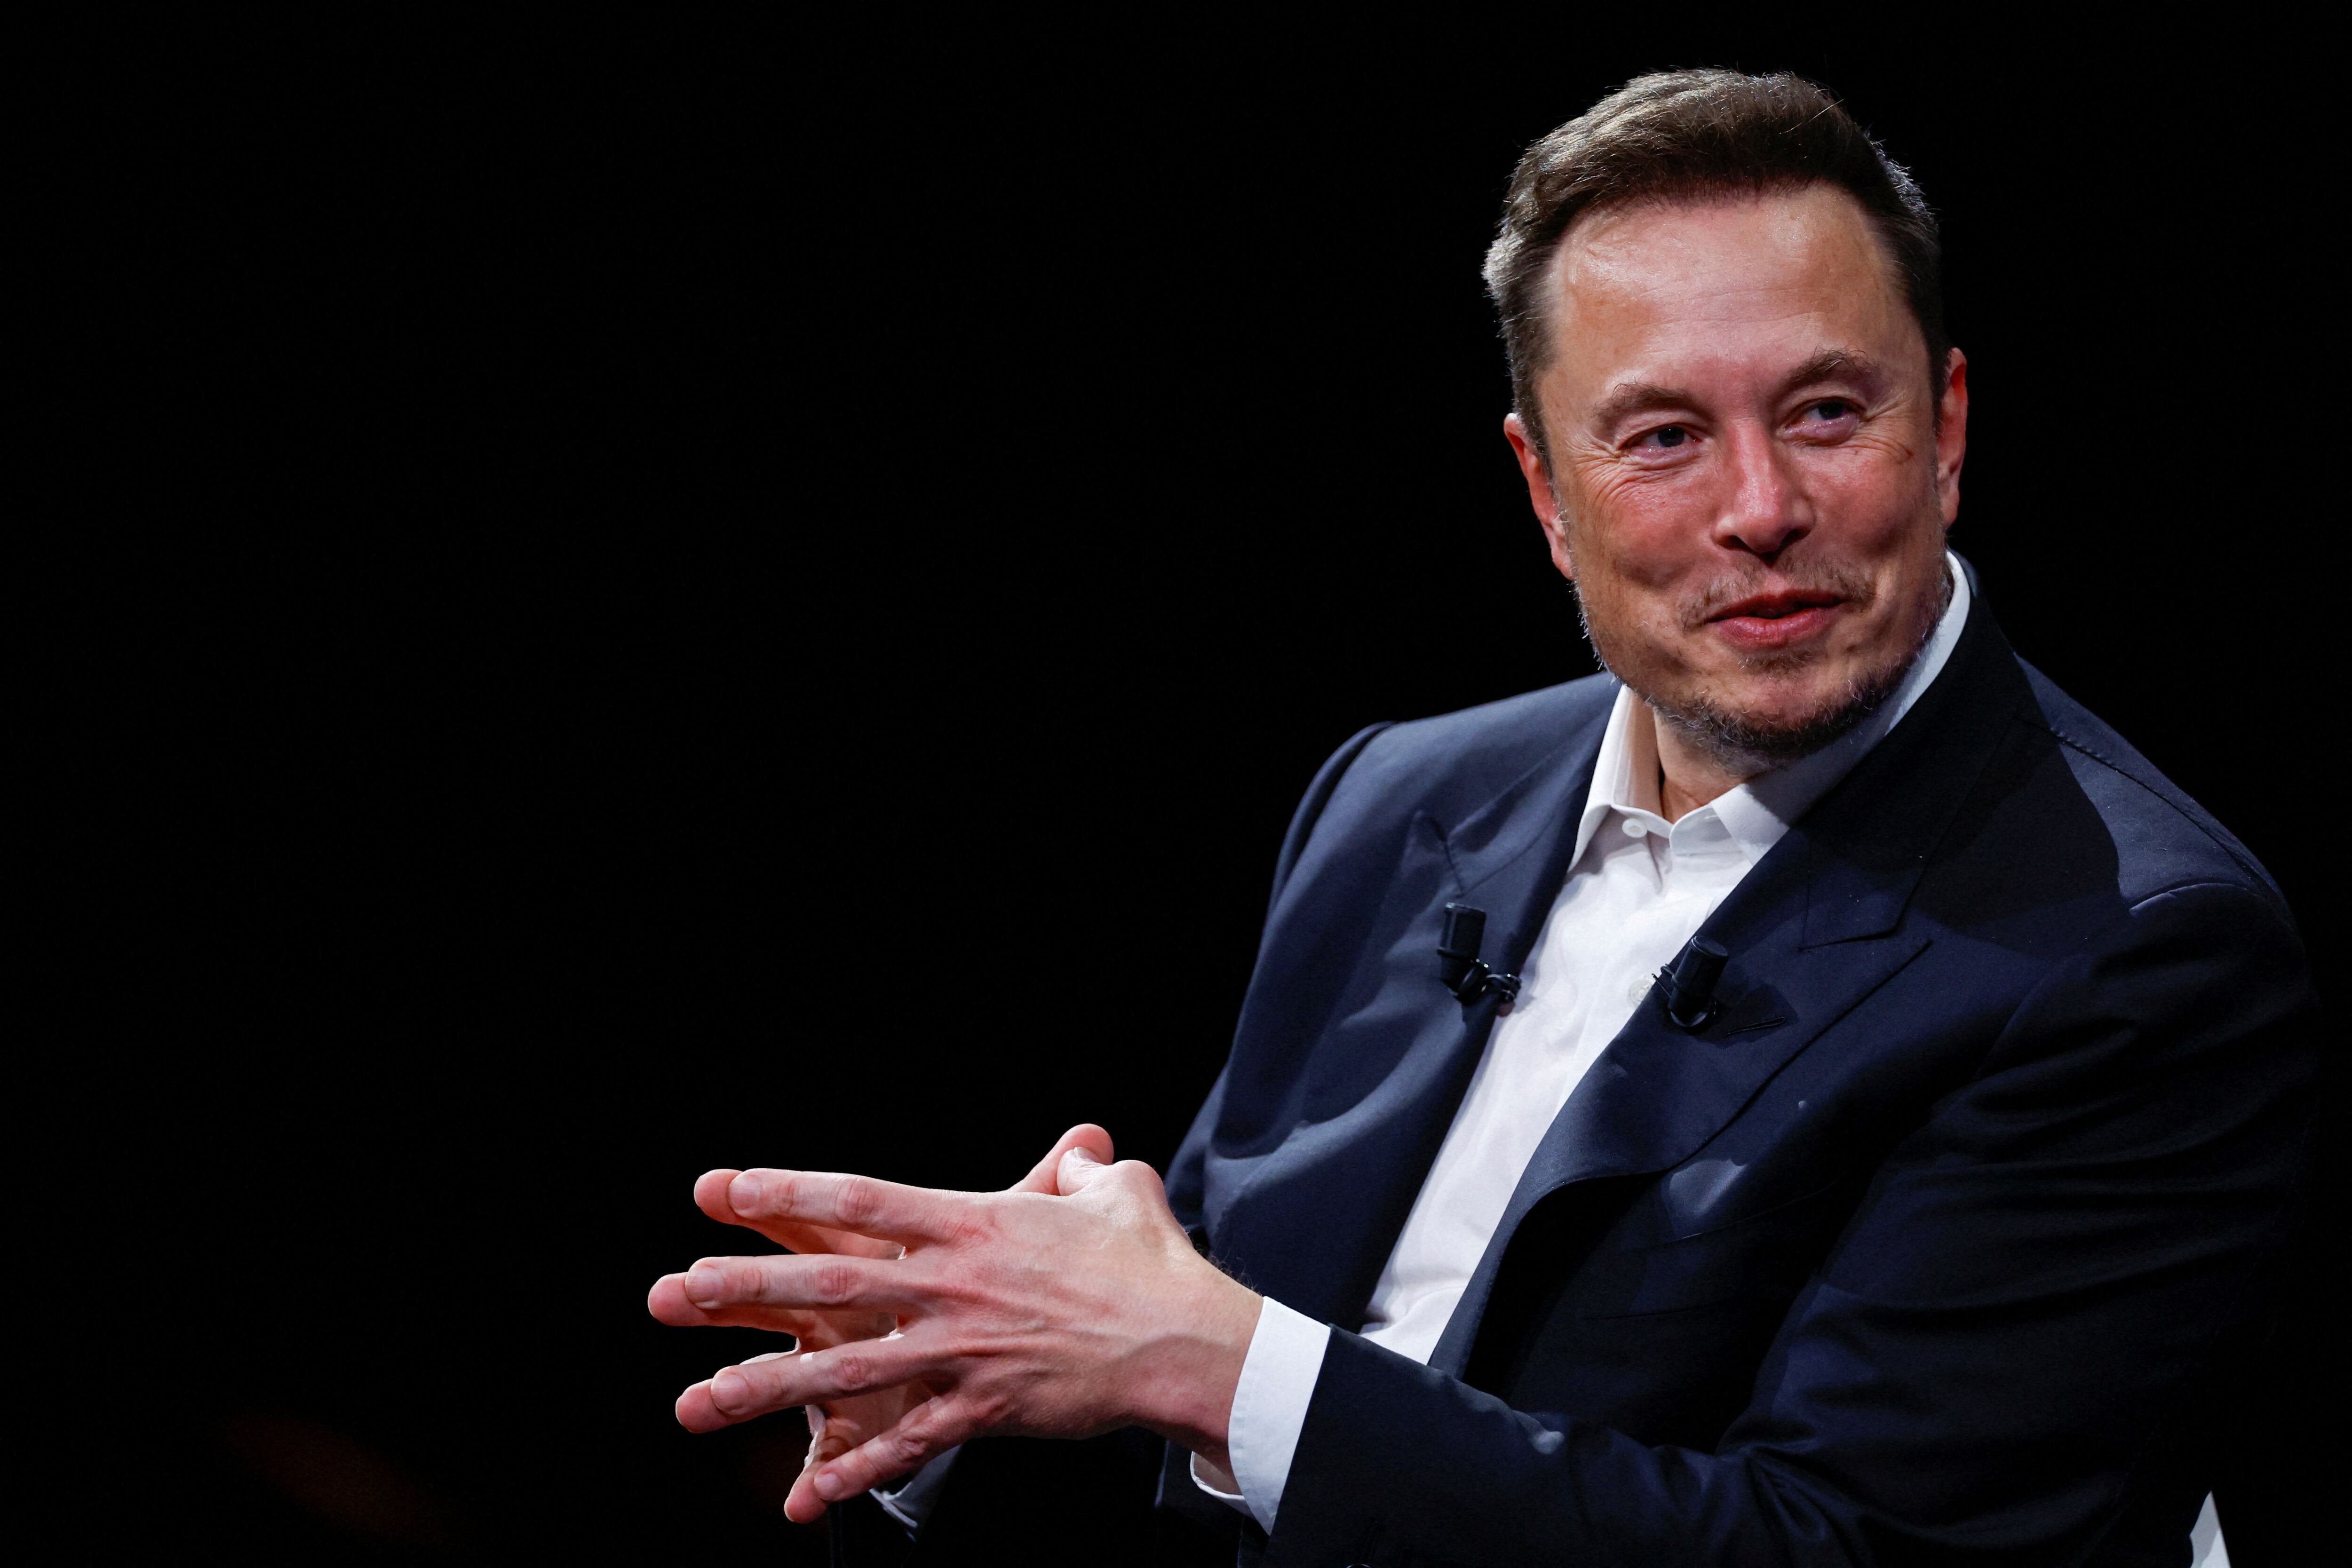 Elon Musk, CEO de Tesla, es uno de los personajes más controversiales de la industria, y ha impregnado a la marca con su personal modo de llevar adelante sus ideas y proyectos. REUTERS/Gonzalo Fuentes/File Photo